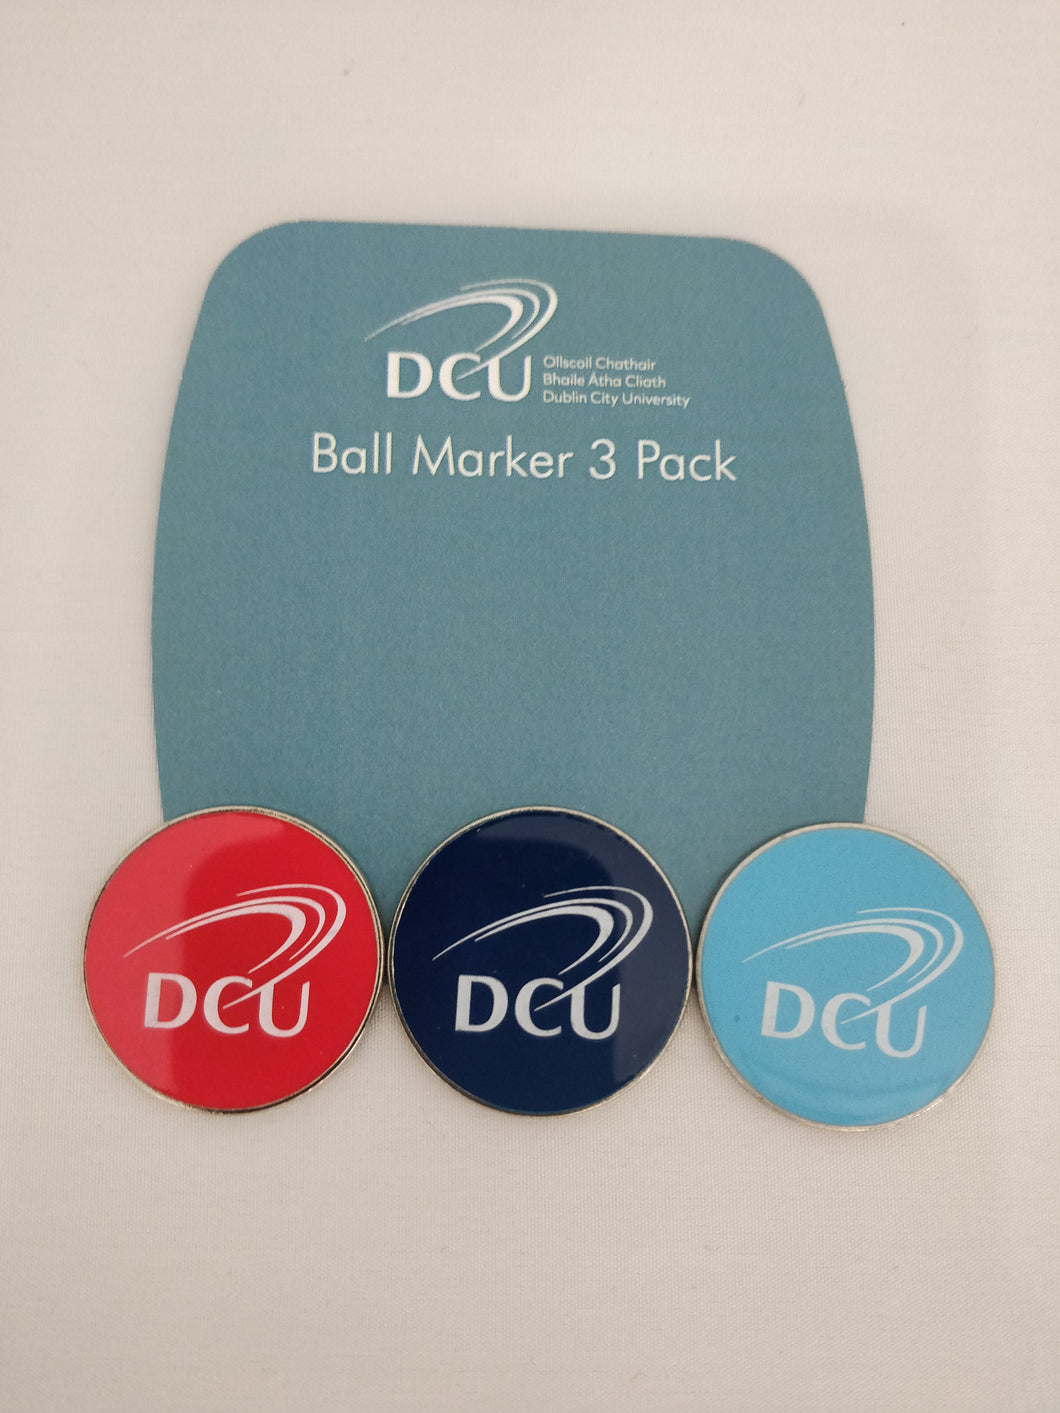 DCU Ball Marker 3 pack